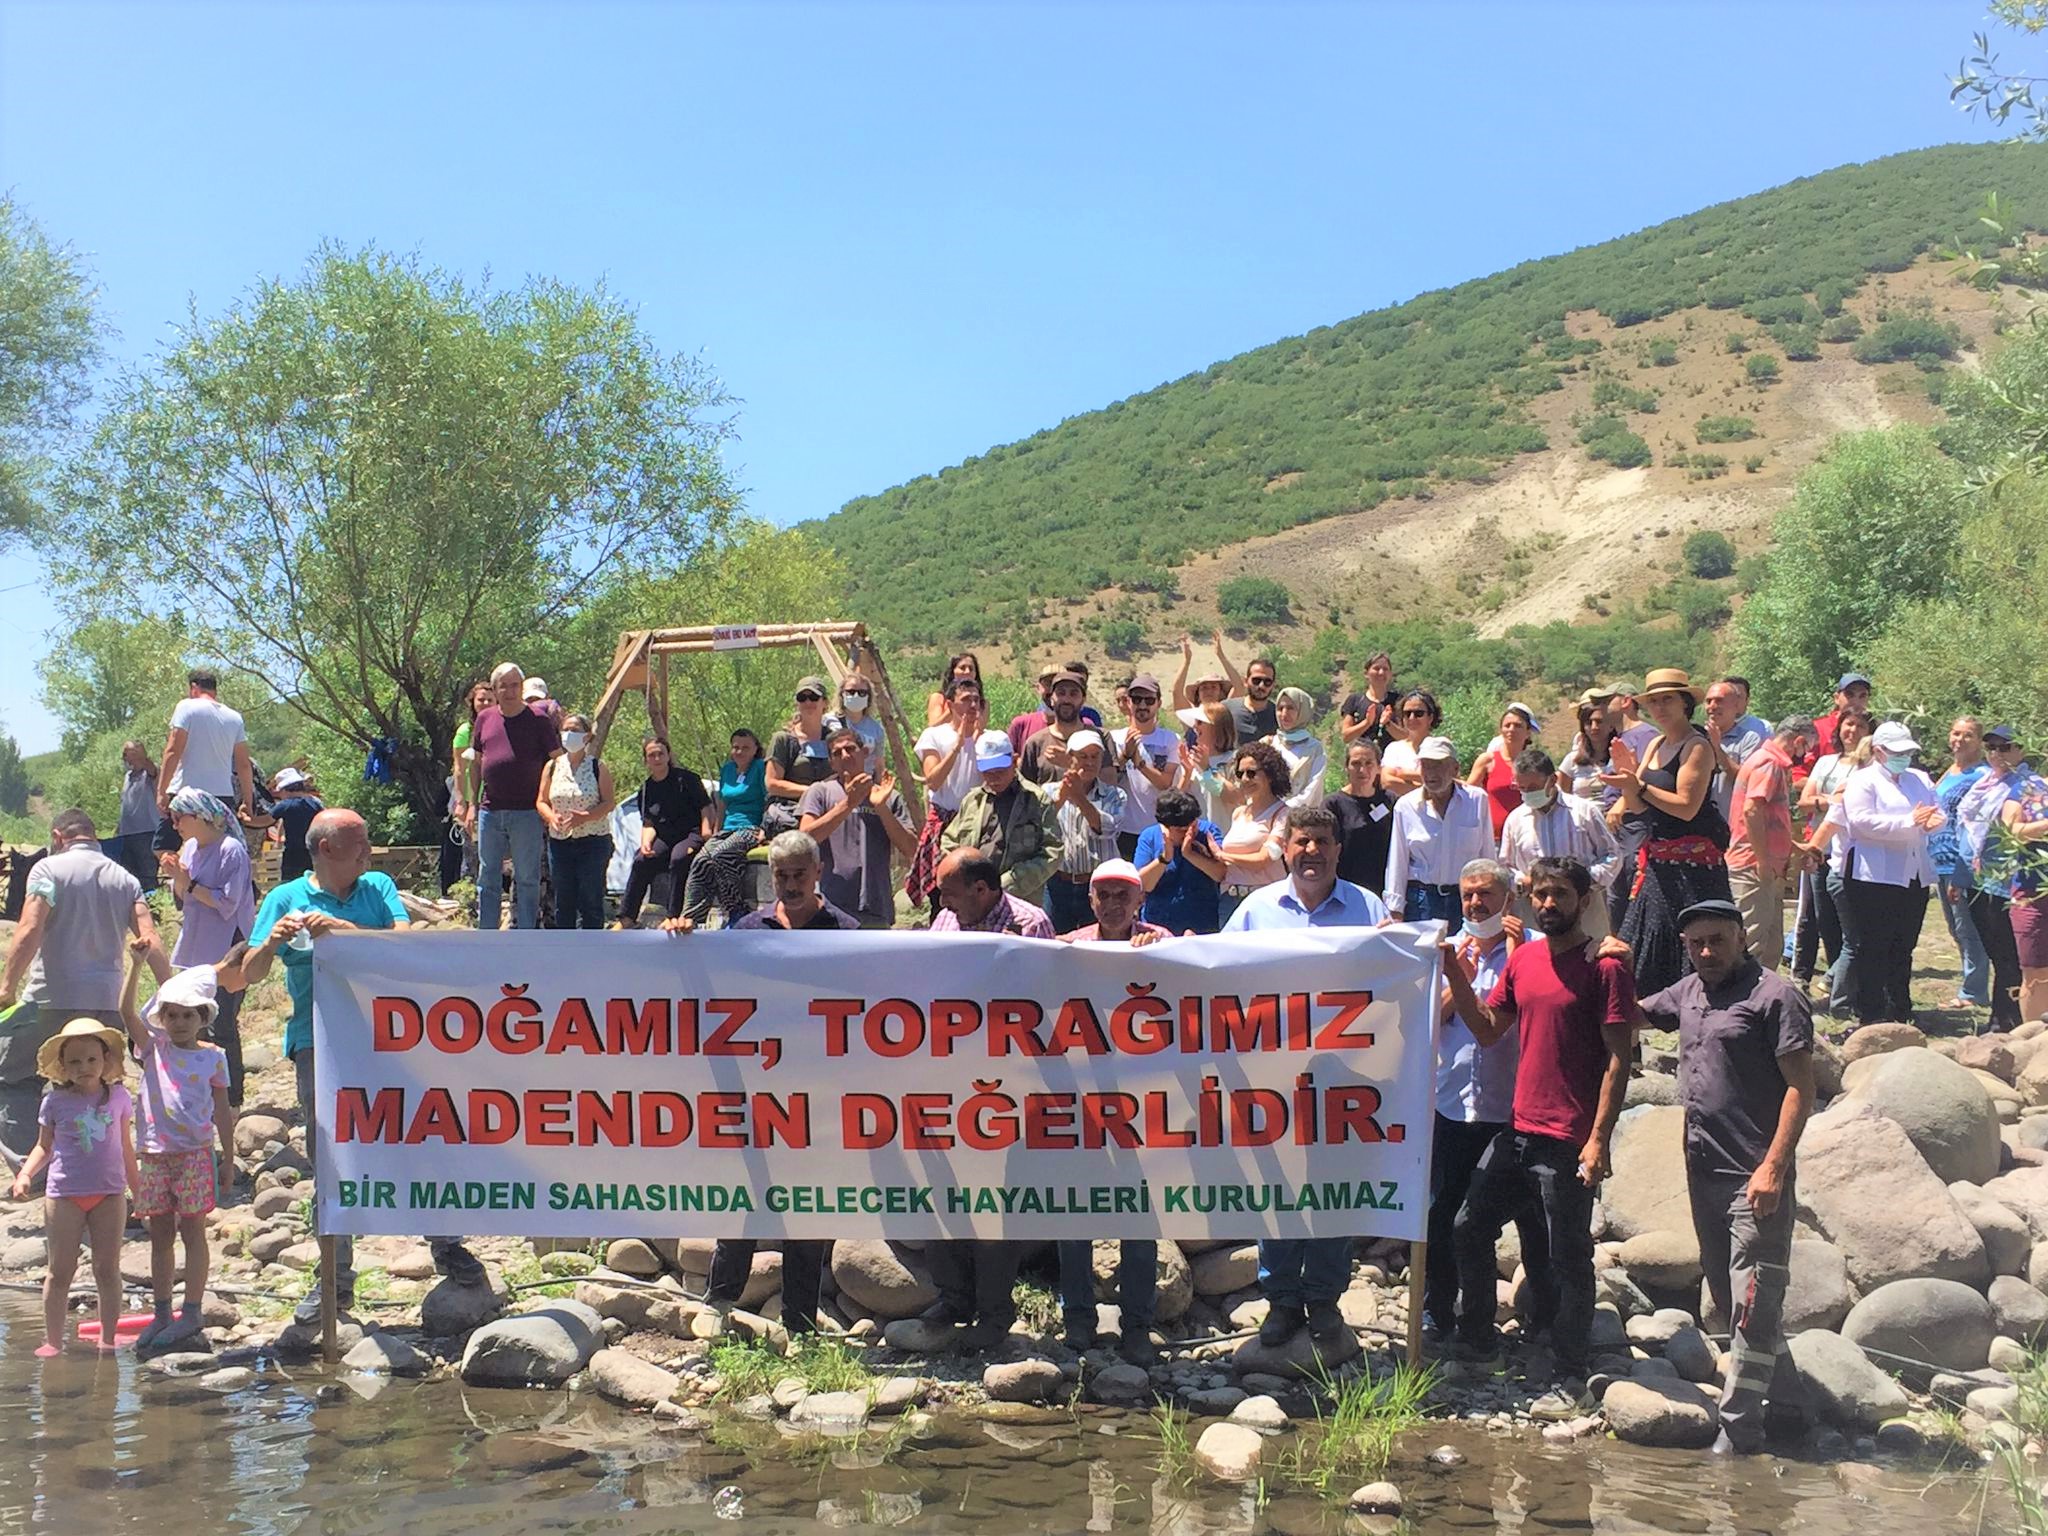 Beypazarı Uruş ve Güdül Tahtacıörencik köylüleri bölgelerinde maden tesisi istemiyor!